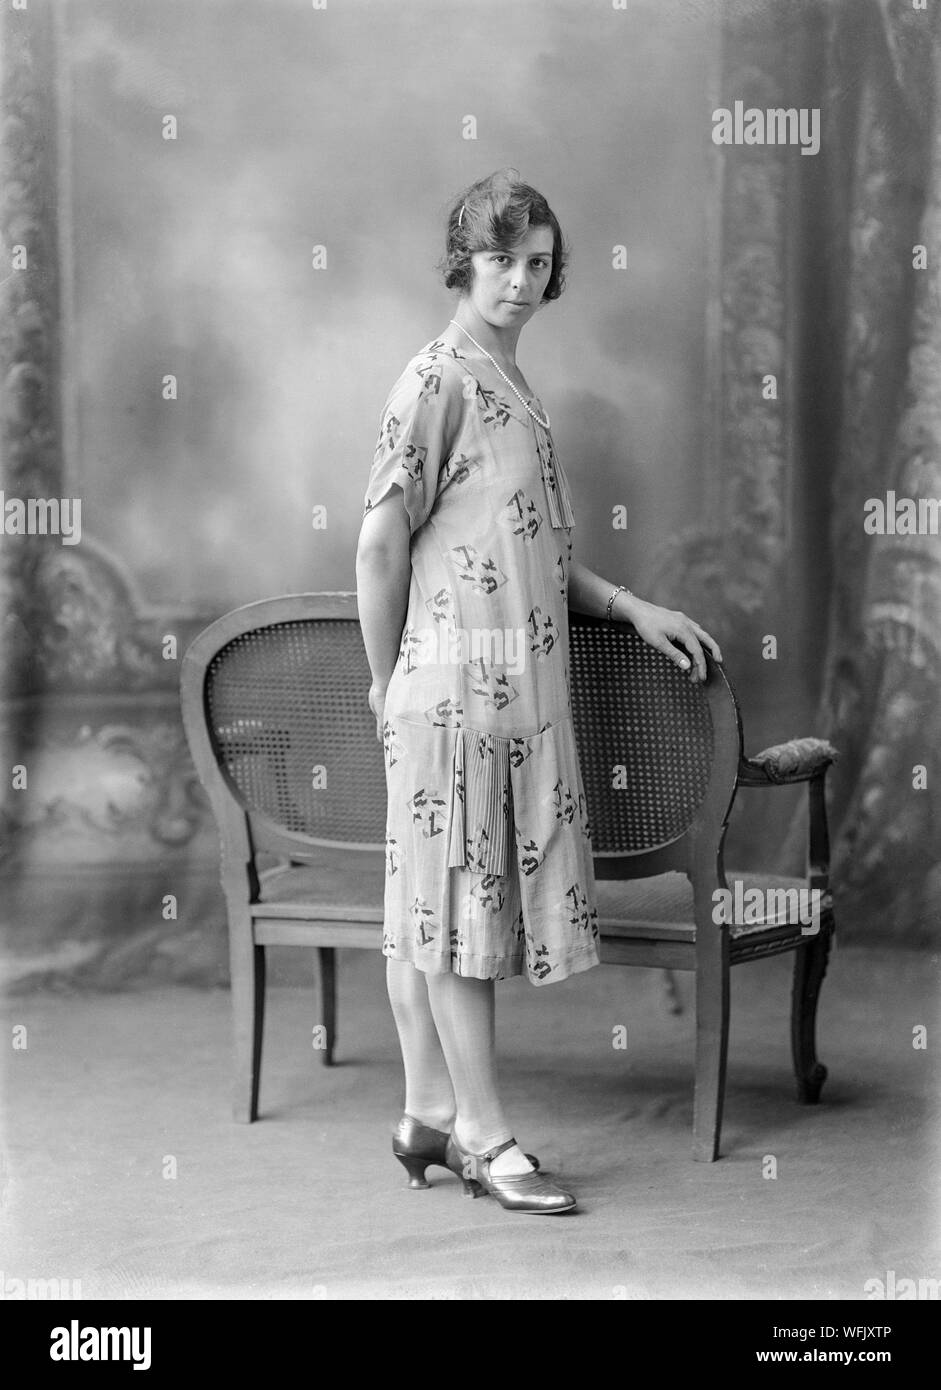 Au début du vingtième siècle vintage noir et blanc photographie, prise dans un studio photographique, montrant une jeune femme, dans une robe typique de la mode de la période, posant pour l'appareil photo tandis que l'article. Banque D'Images